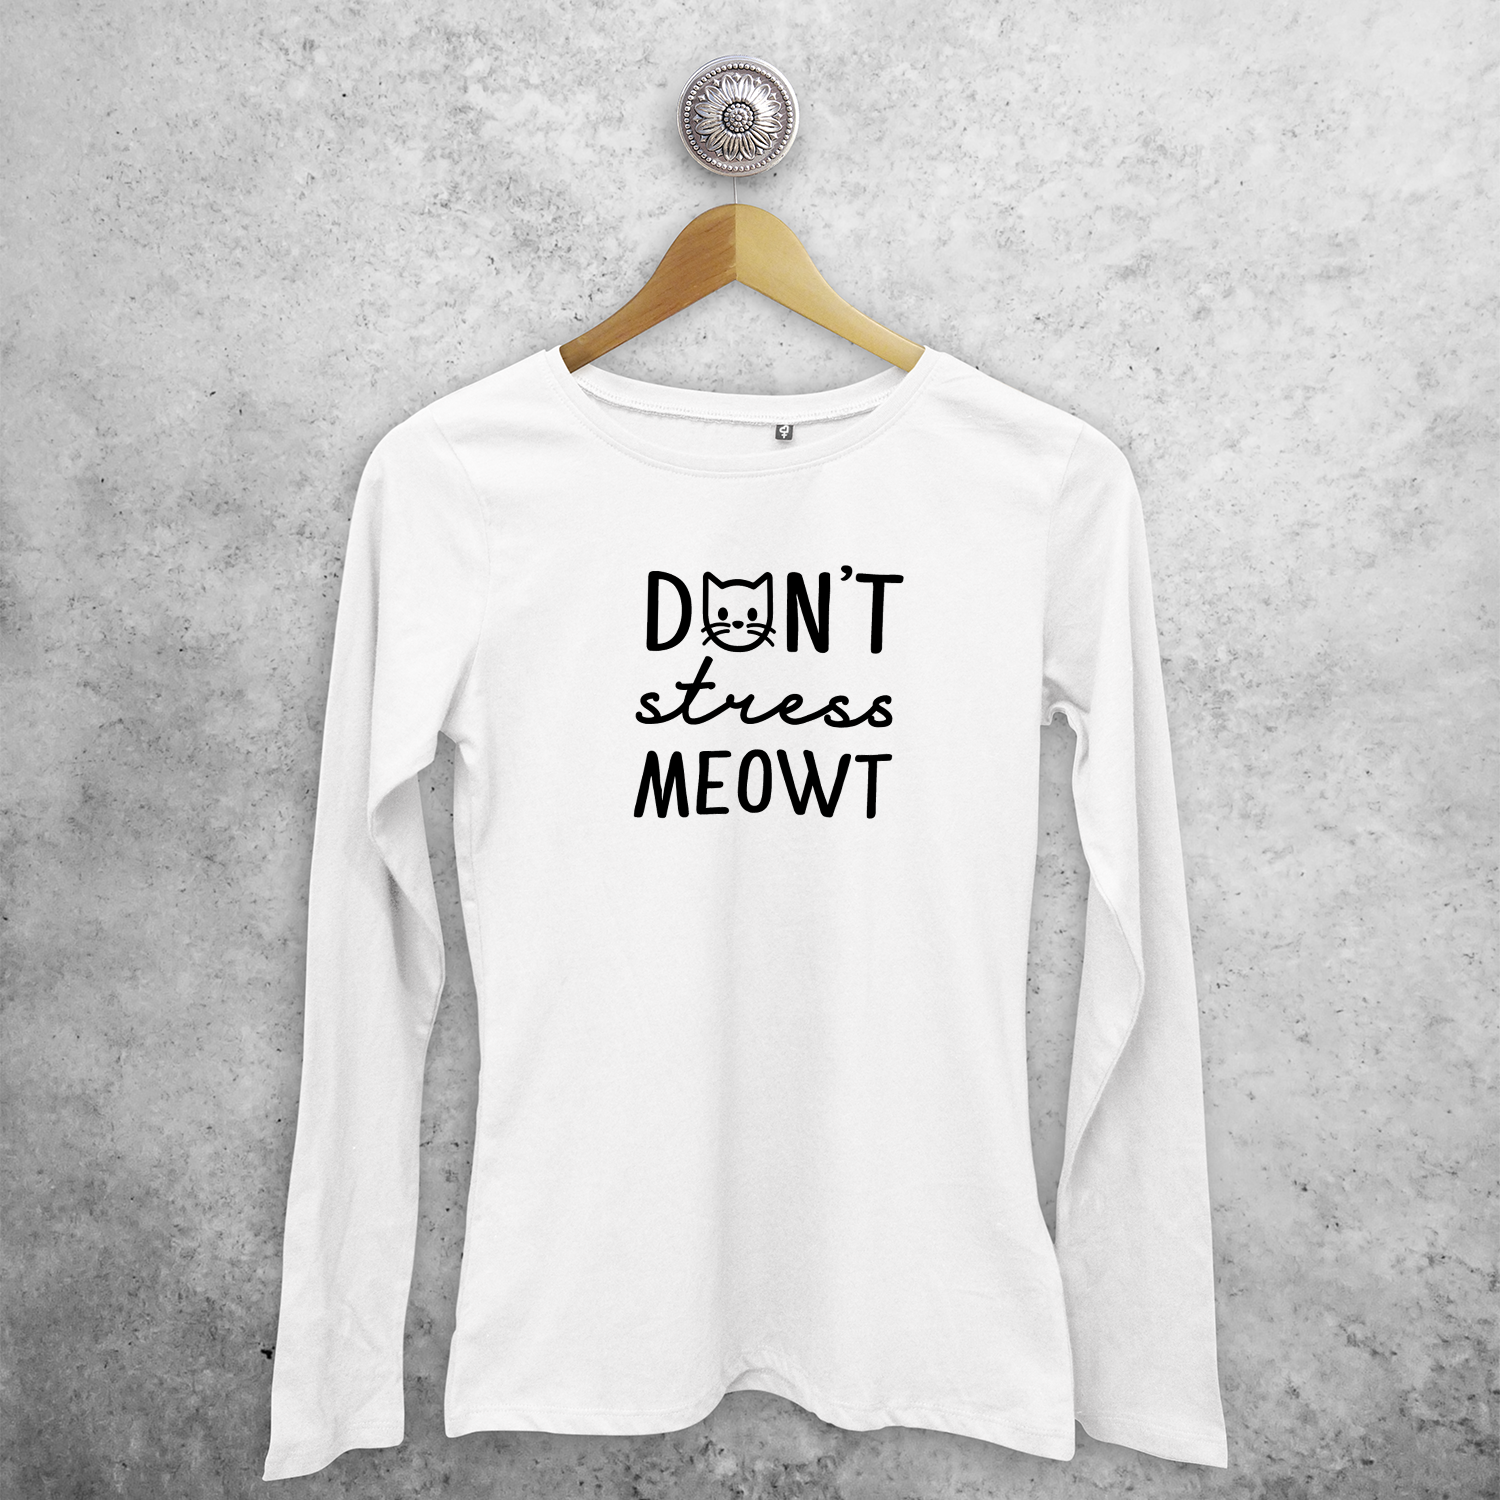 Don't stress meowt' volwassene shirt met lange mouwen